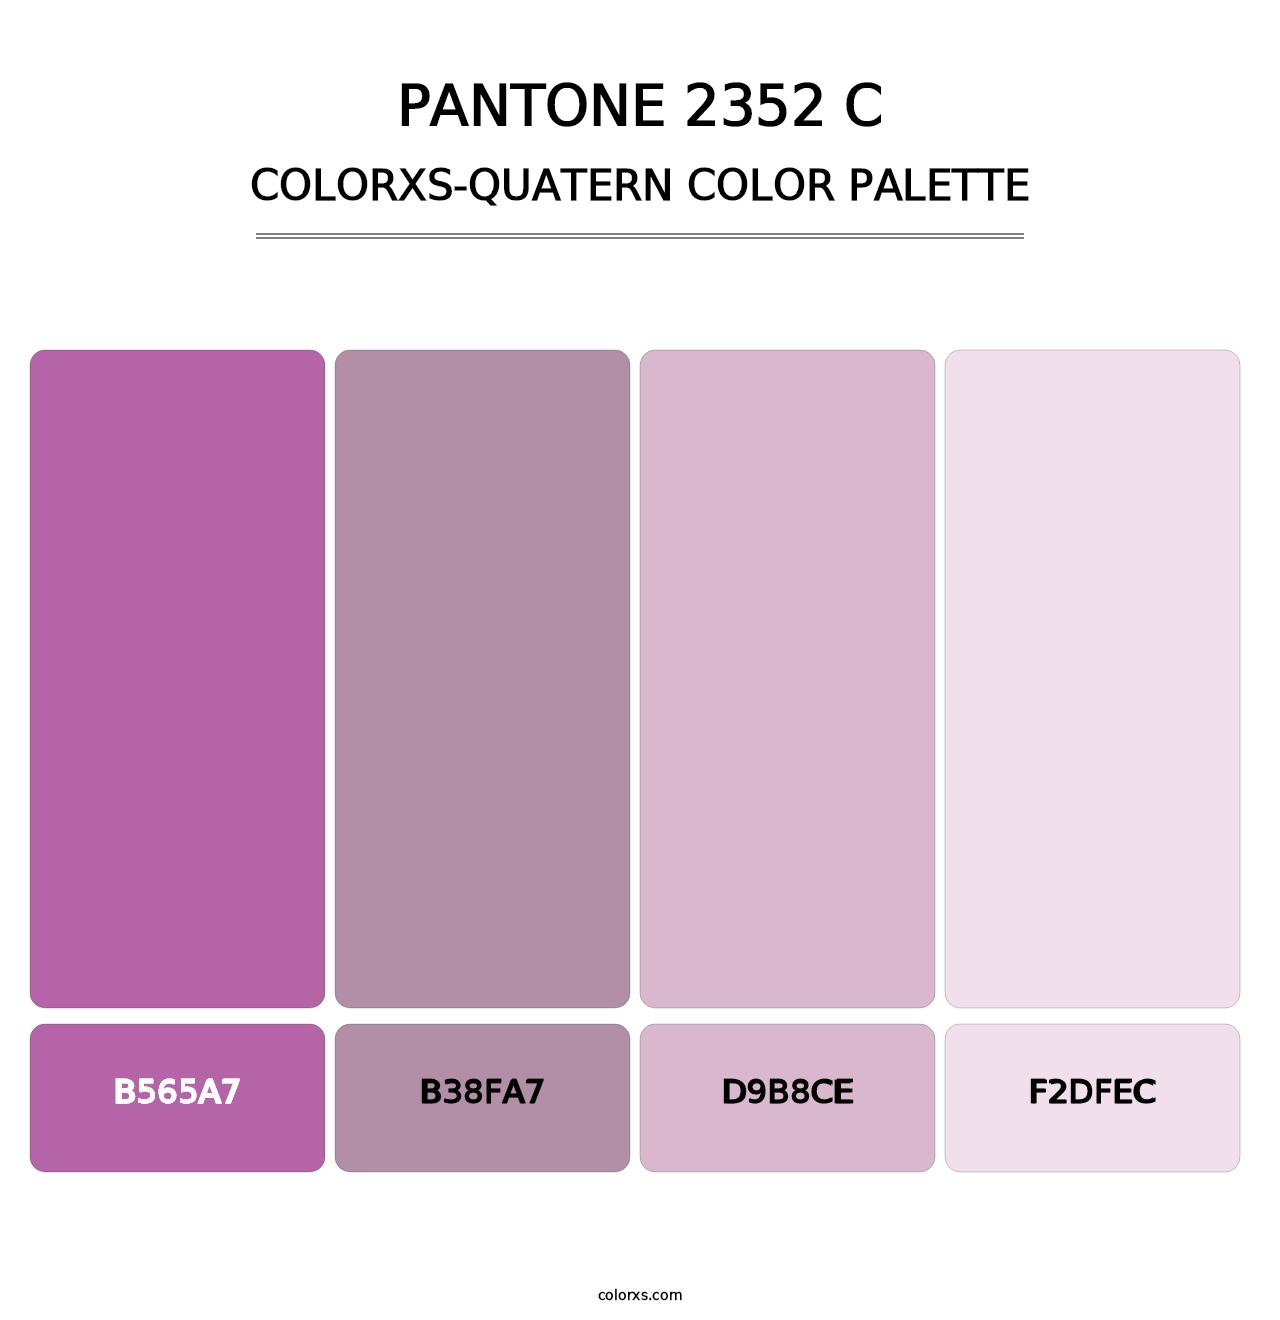 PANTONE 2352 C - Colorxs Quatern Palette